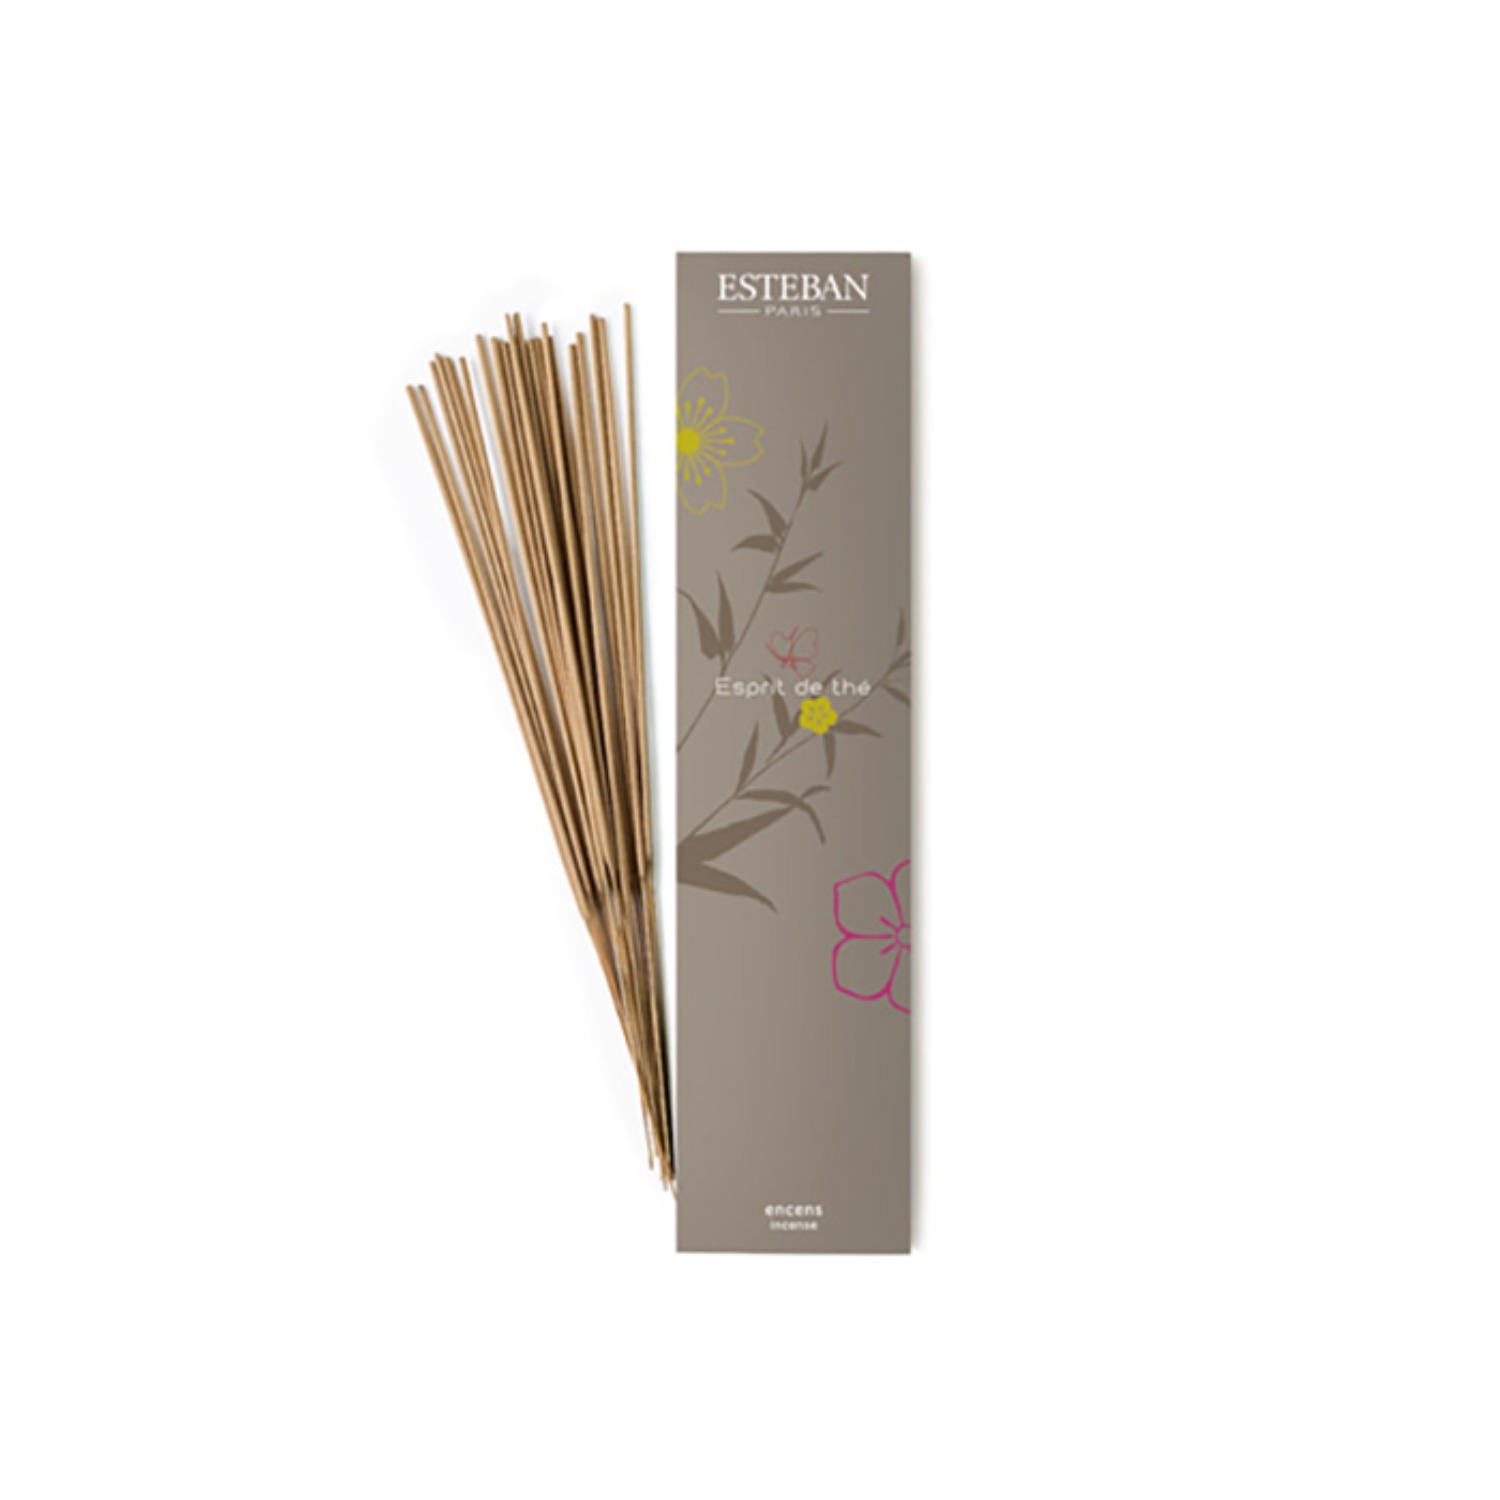 esteban esprit de the bamboo incense stick